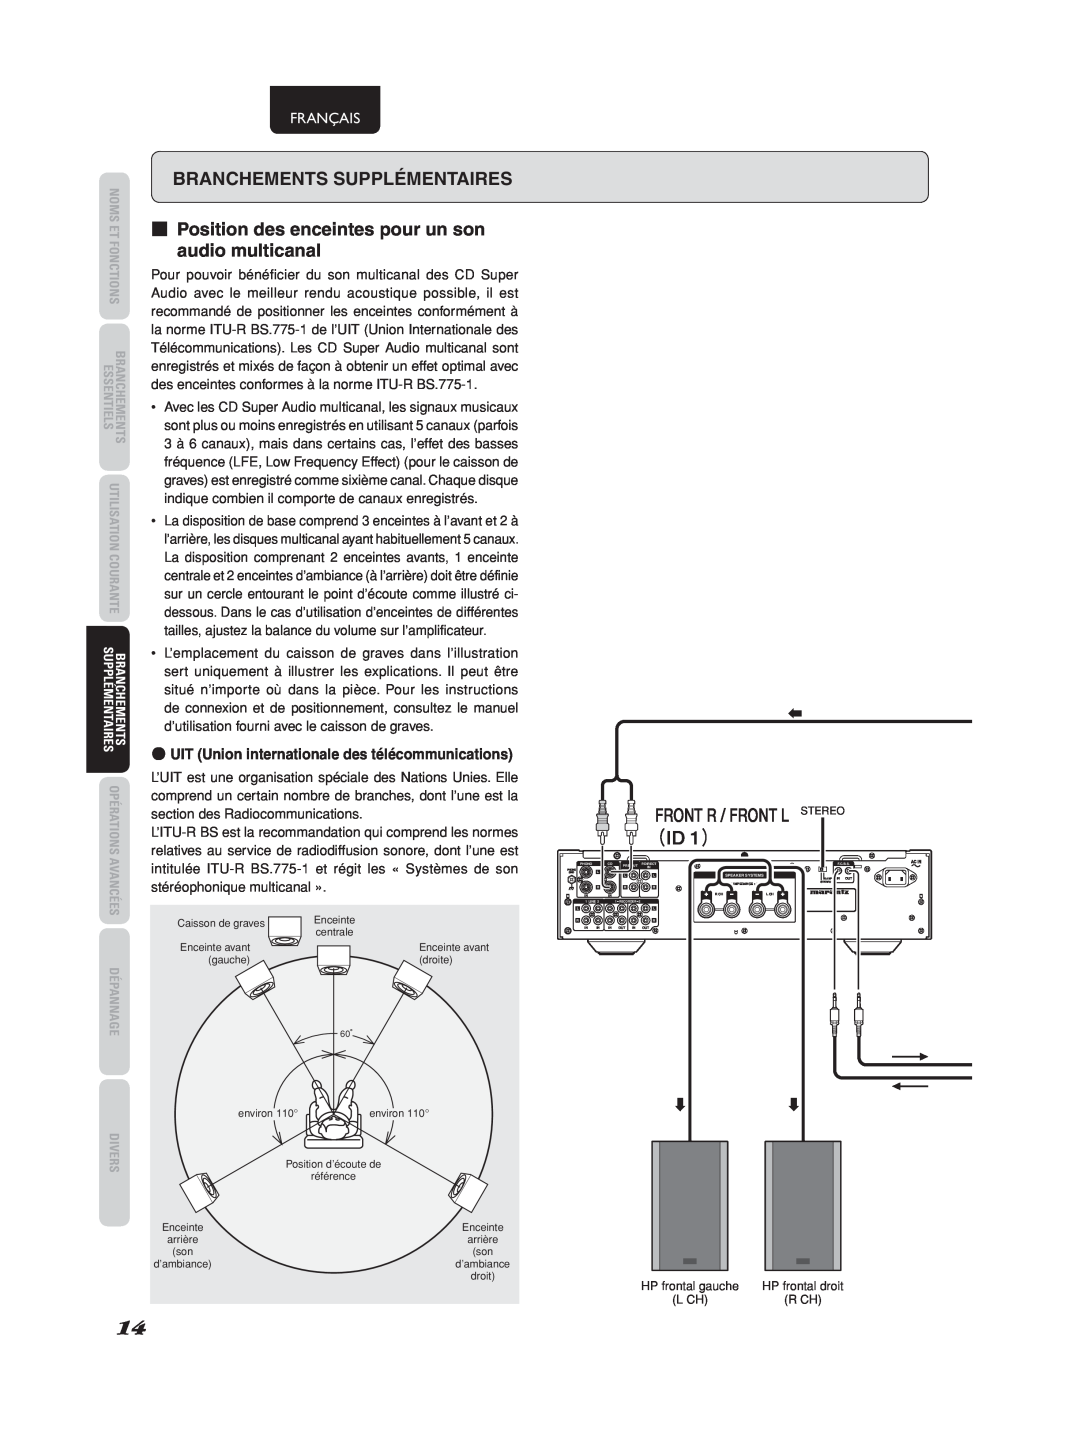 Marantz 541110275035M manual （ID 1）, Branchements Supplémentaires, Front R / Front L Stereo, Français 